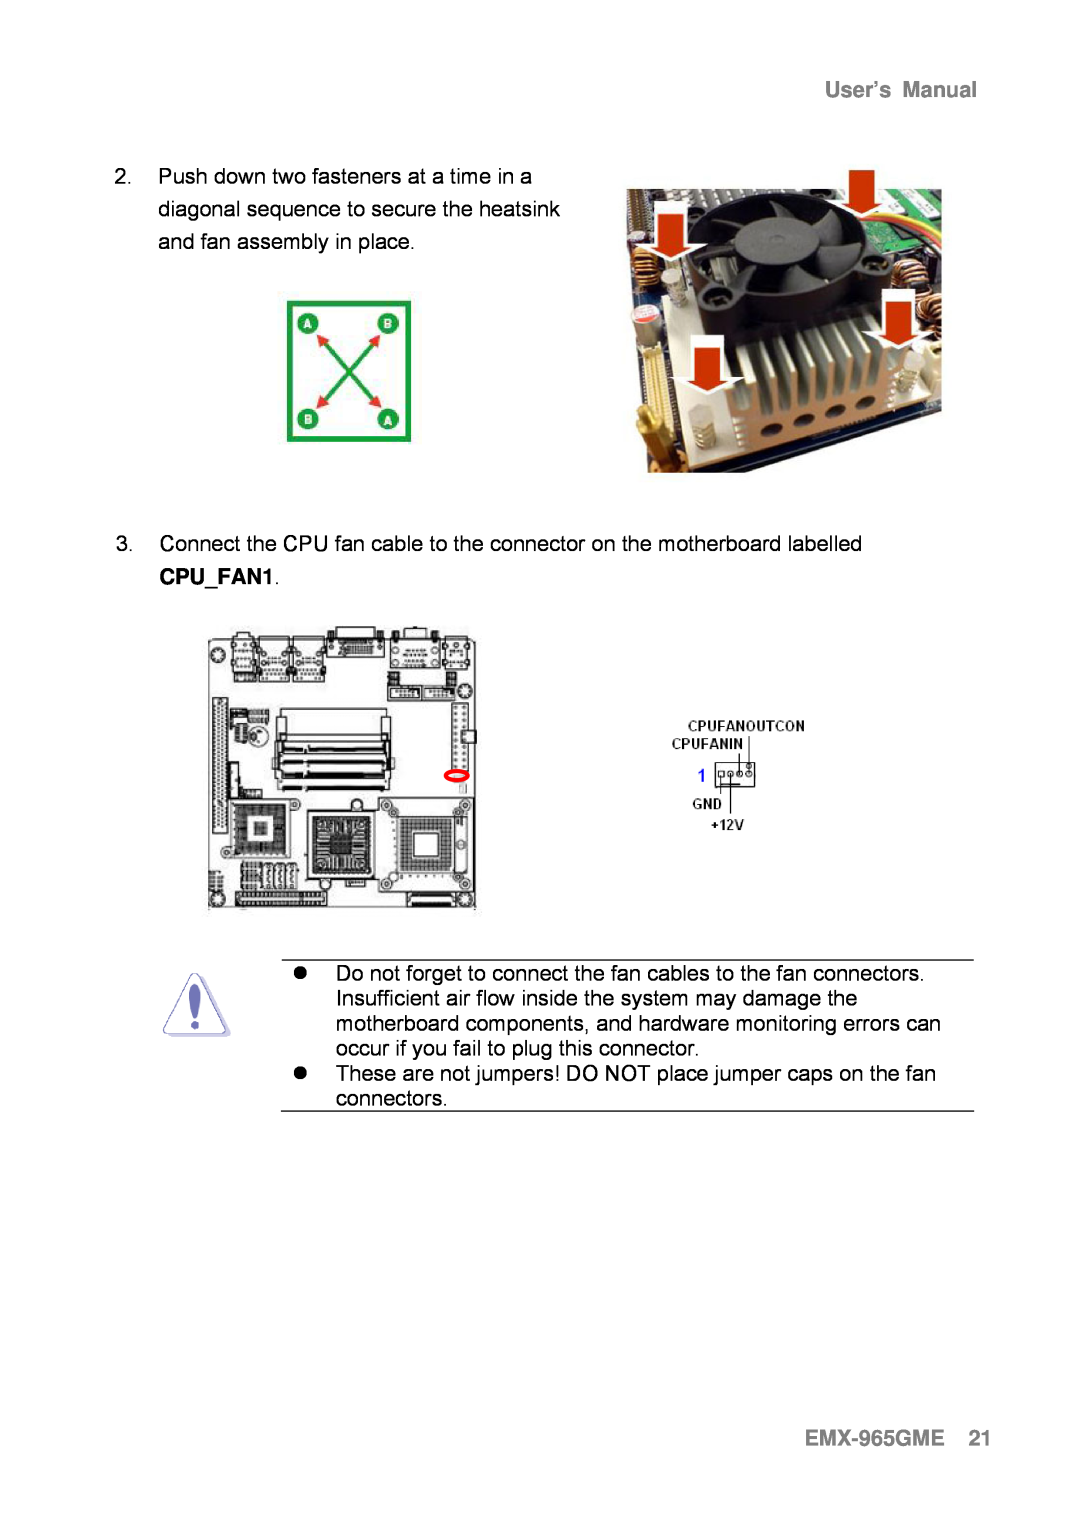 Intel user manual EMX-965GME21, User’s Manual 